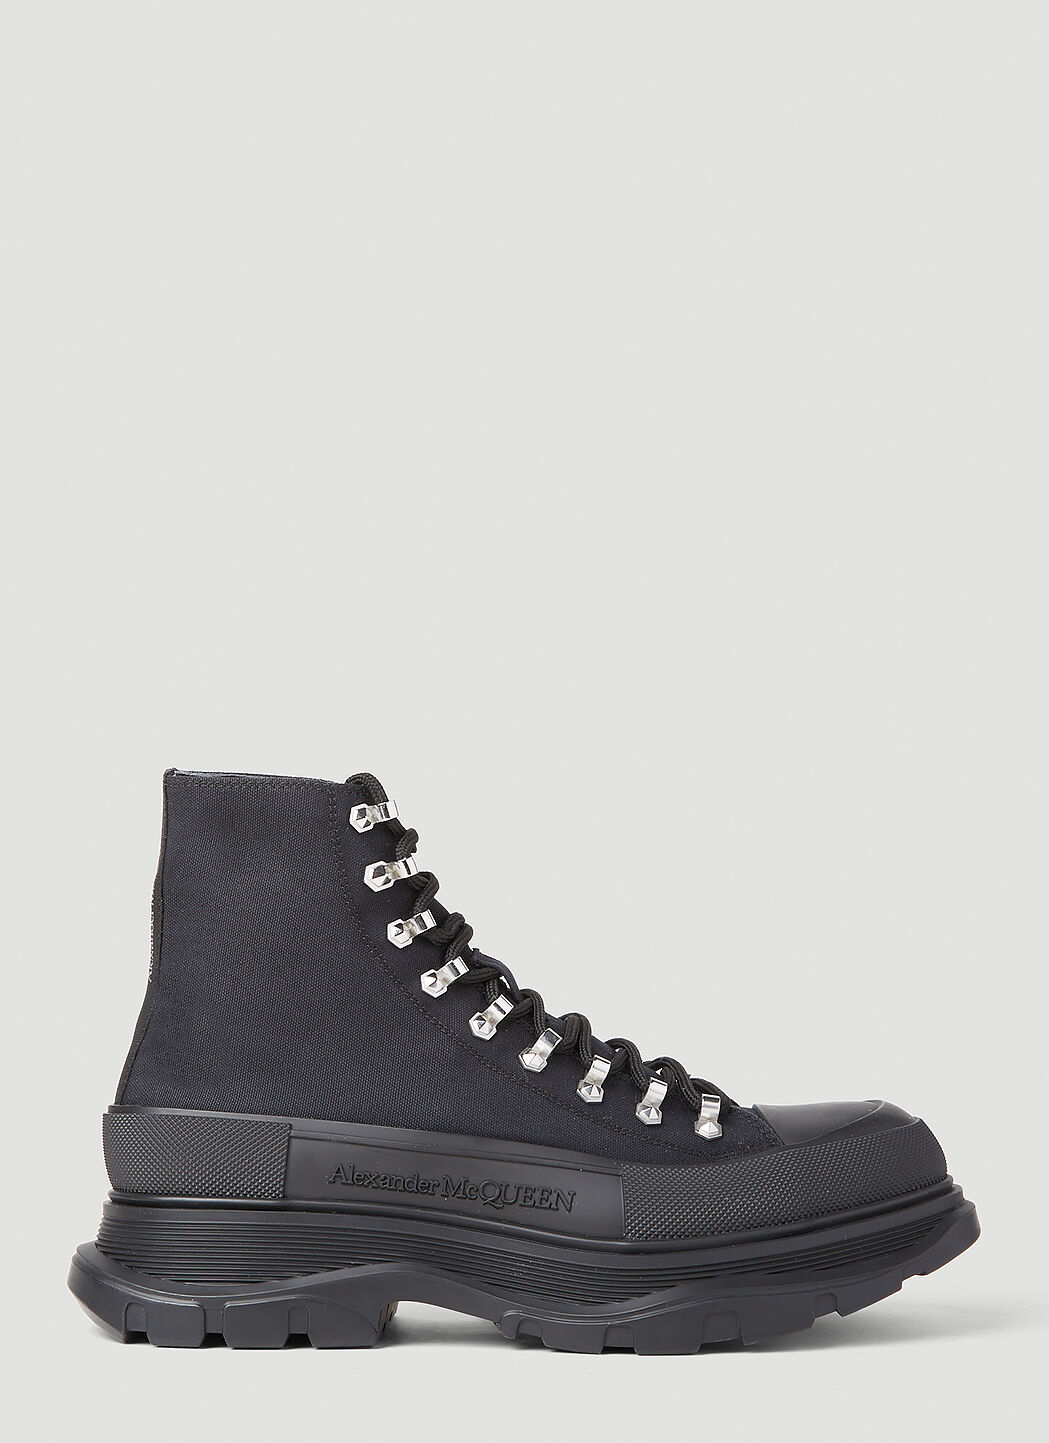 Alexander McQueen Tread Slick Boots Black amq0152002